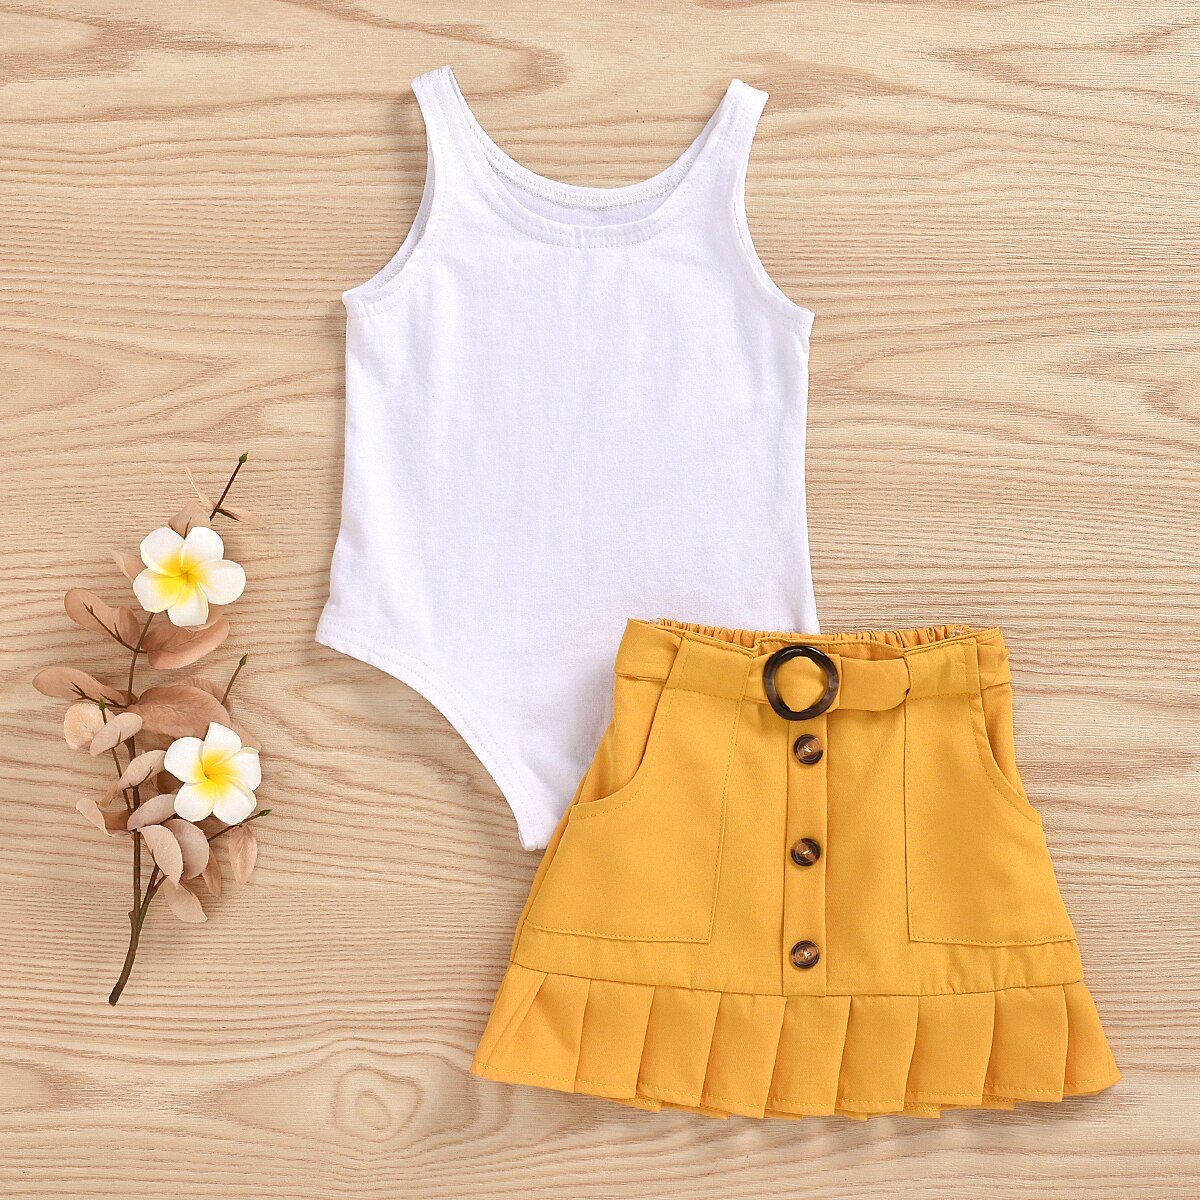 2 sztuk maluch dzieci dziewczynka ubrania zestawy bez rękawów jednolity kolor, kamizelka Romper żółty plisowana spódnica strój na lato zestaw